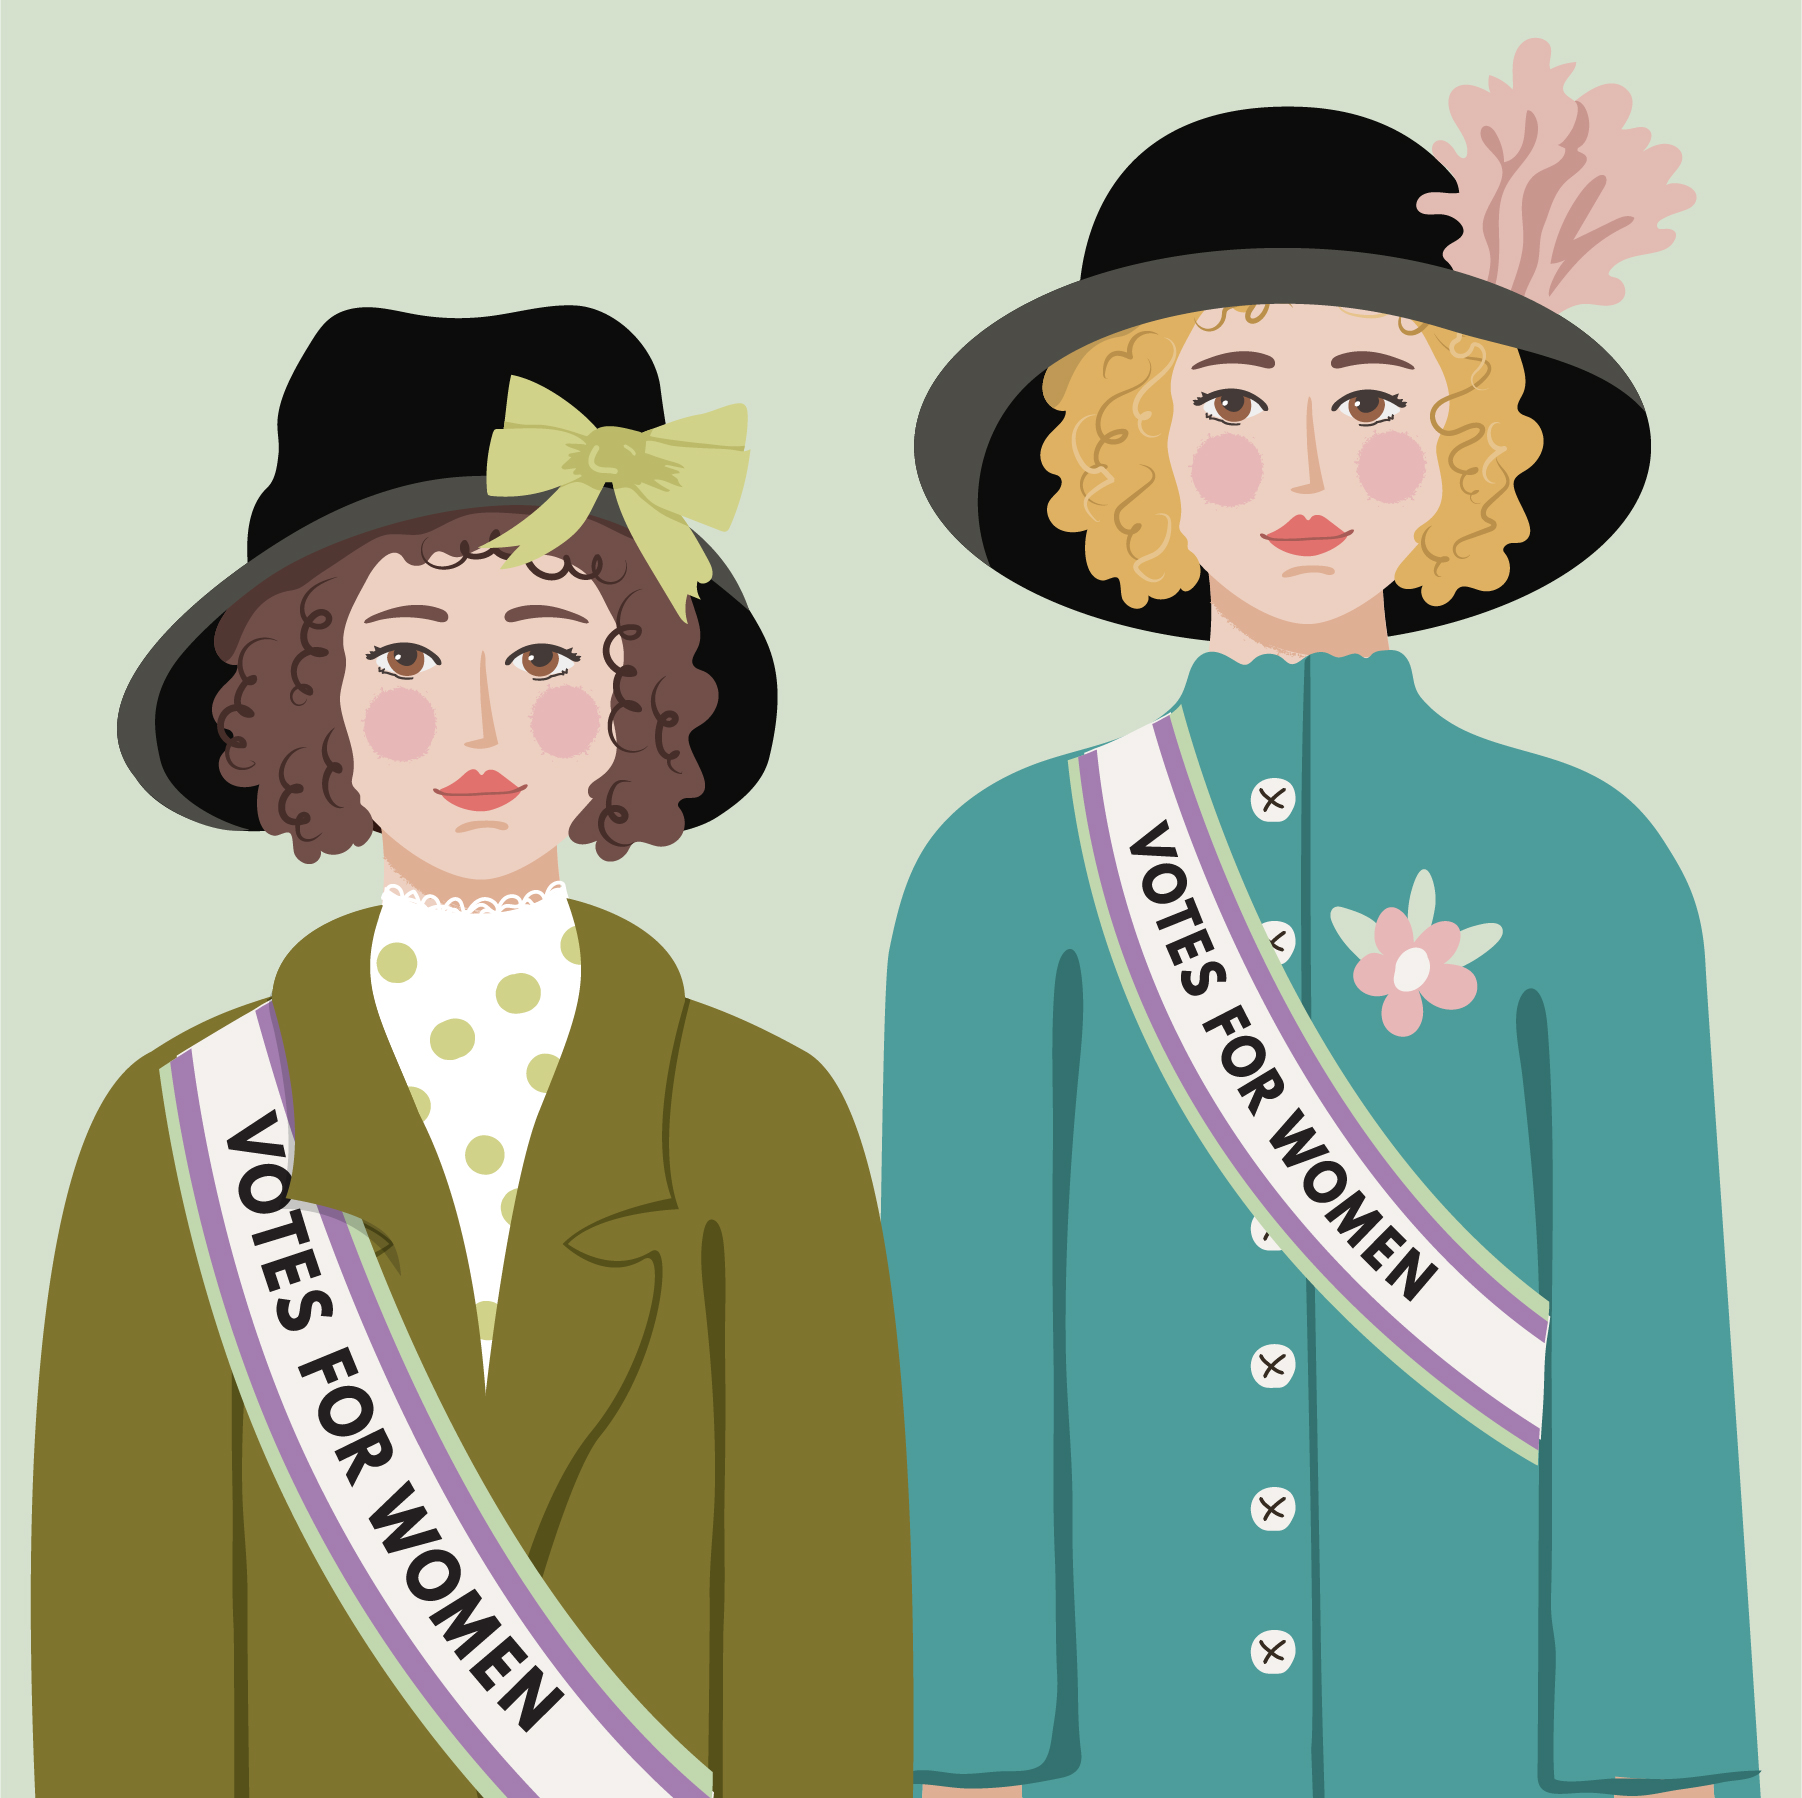 Suffragettes 